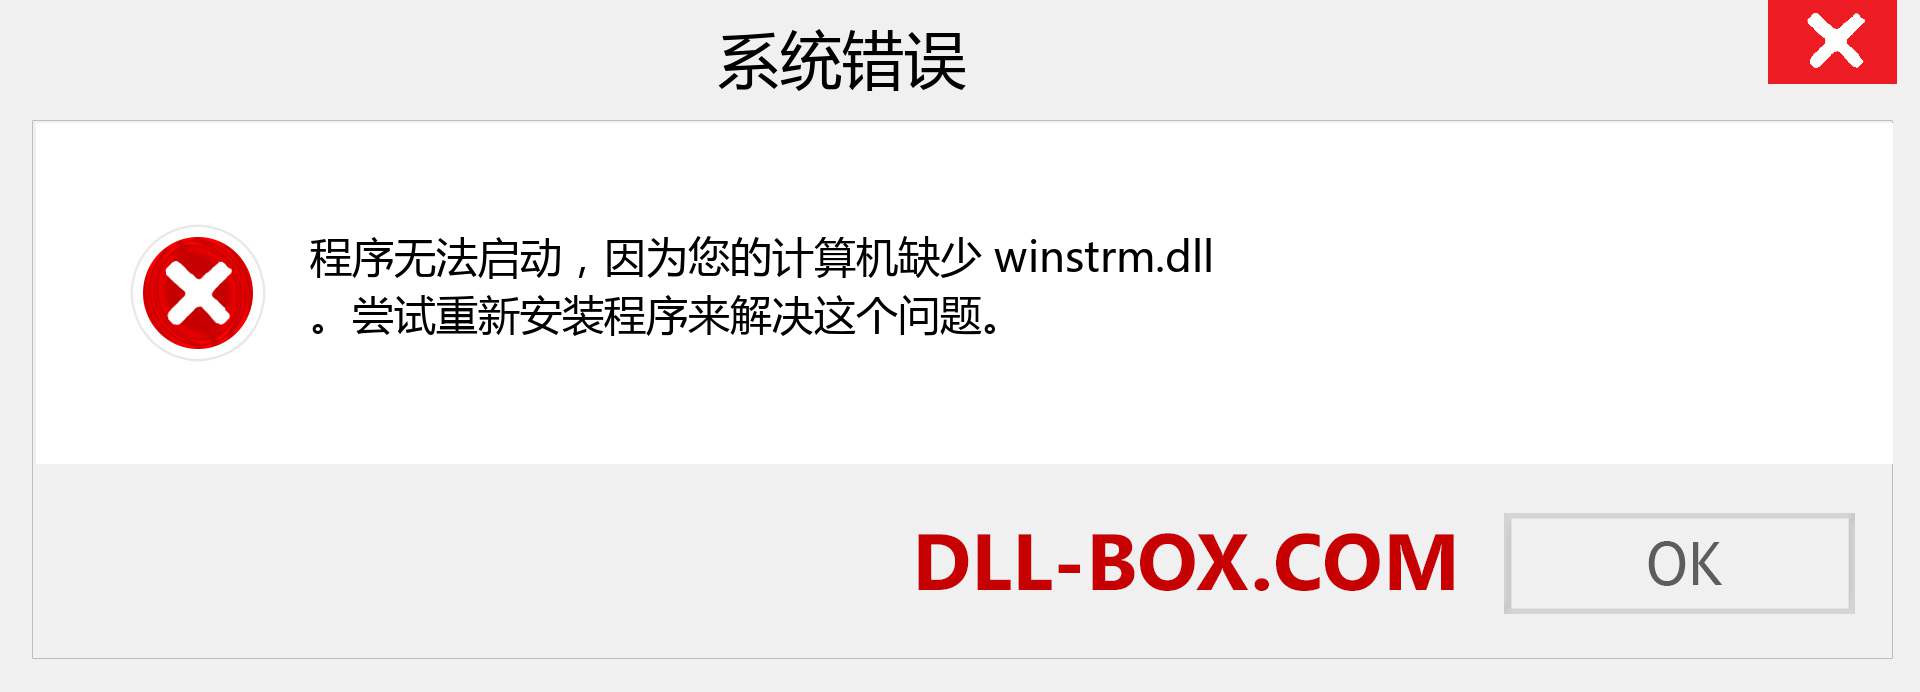 winstrm.dll 文件丢失？。 适用于 Windows 7、8、10 的下载 - 修复 Windows、照片、图像上的 winstrm dll 丢失错误